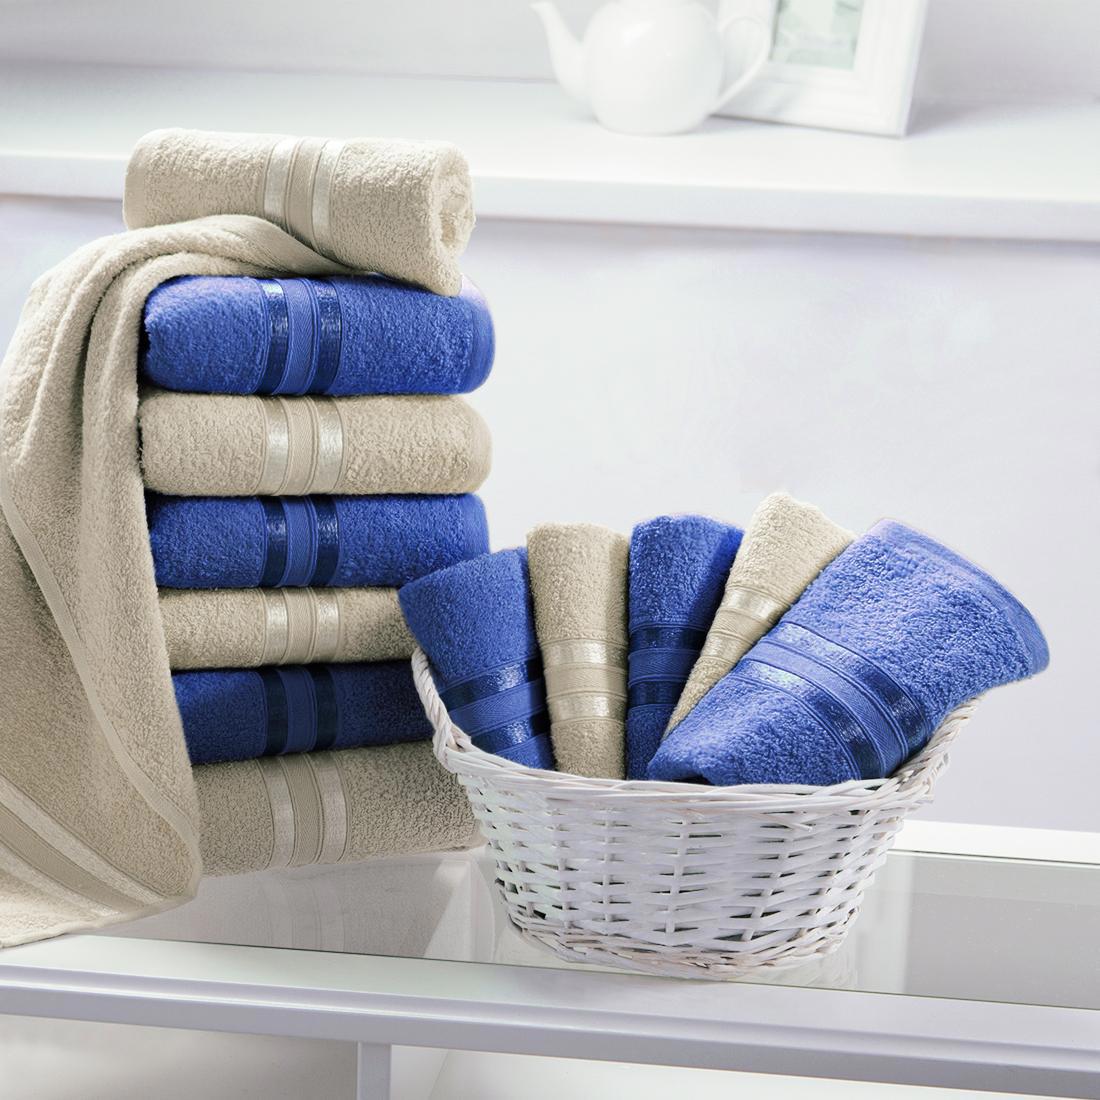 Наличие полотенец. Текстиль для ванной комнаты. Полотенца в ванной. Полотенца в интерьере. Стопка полотенец.